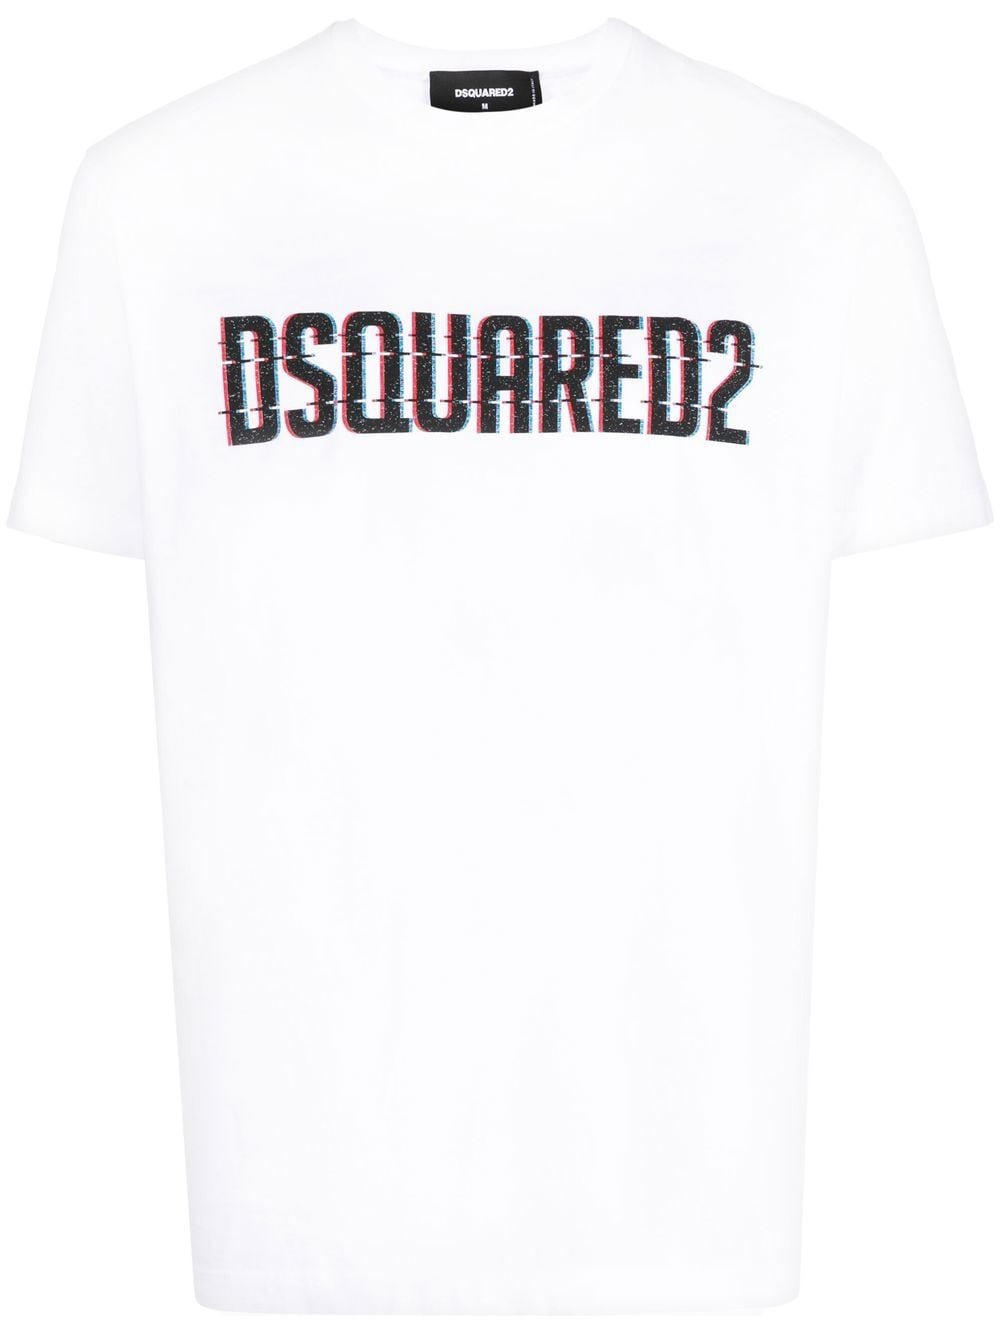 Dsquared2 t-shirt white à logo imprimé - Lothaire